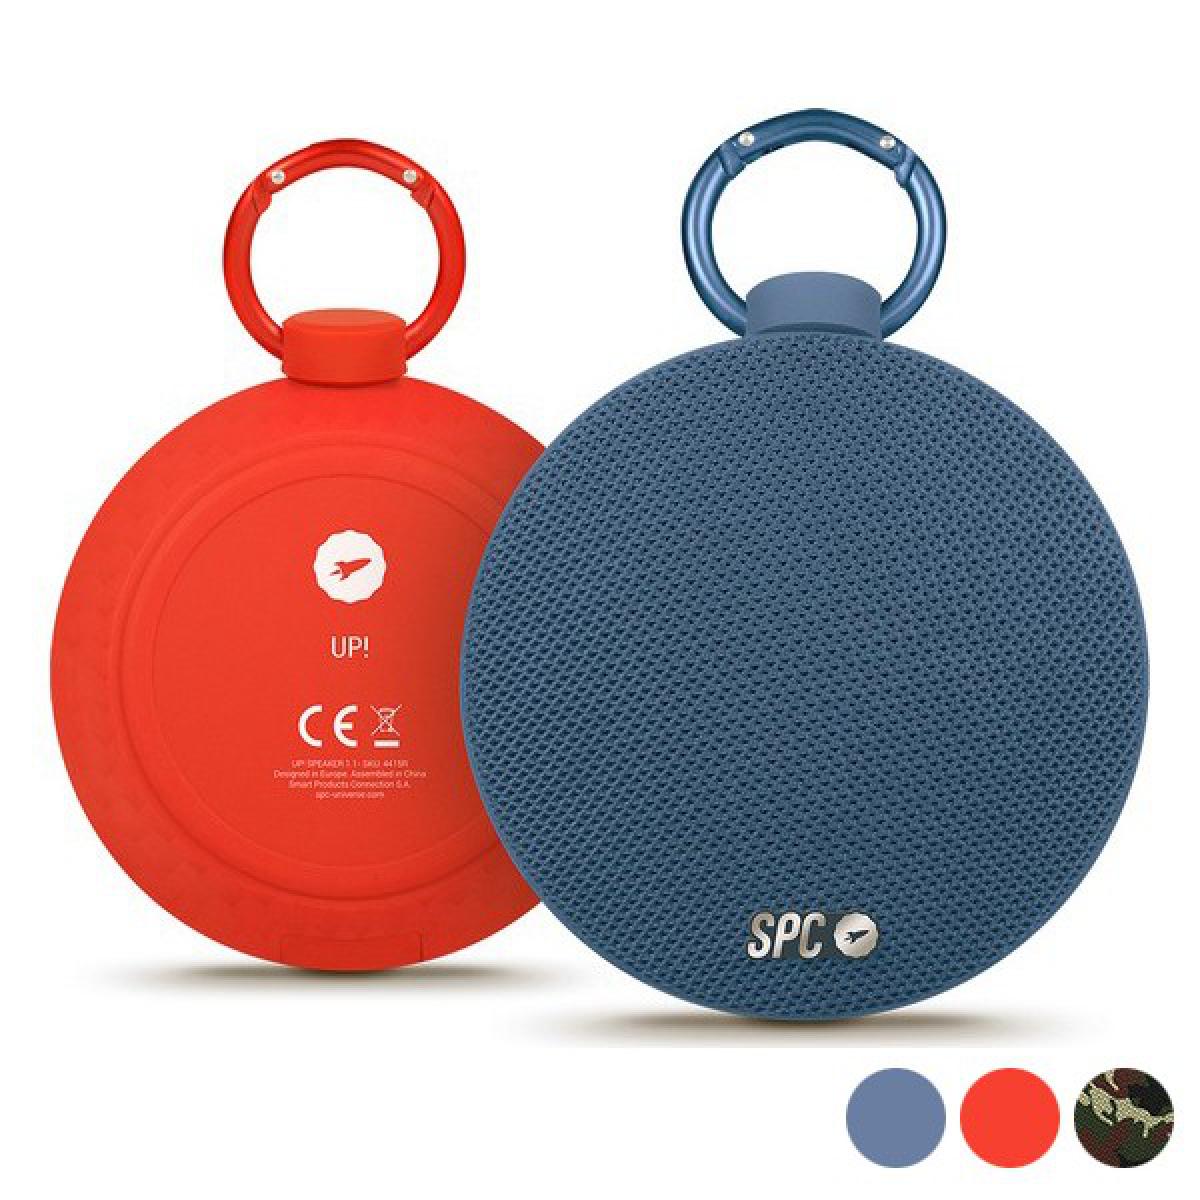 Totalcadeau - Haut-parleur Bluetooth portables 5W Couleur - Rouge - Barre de son